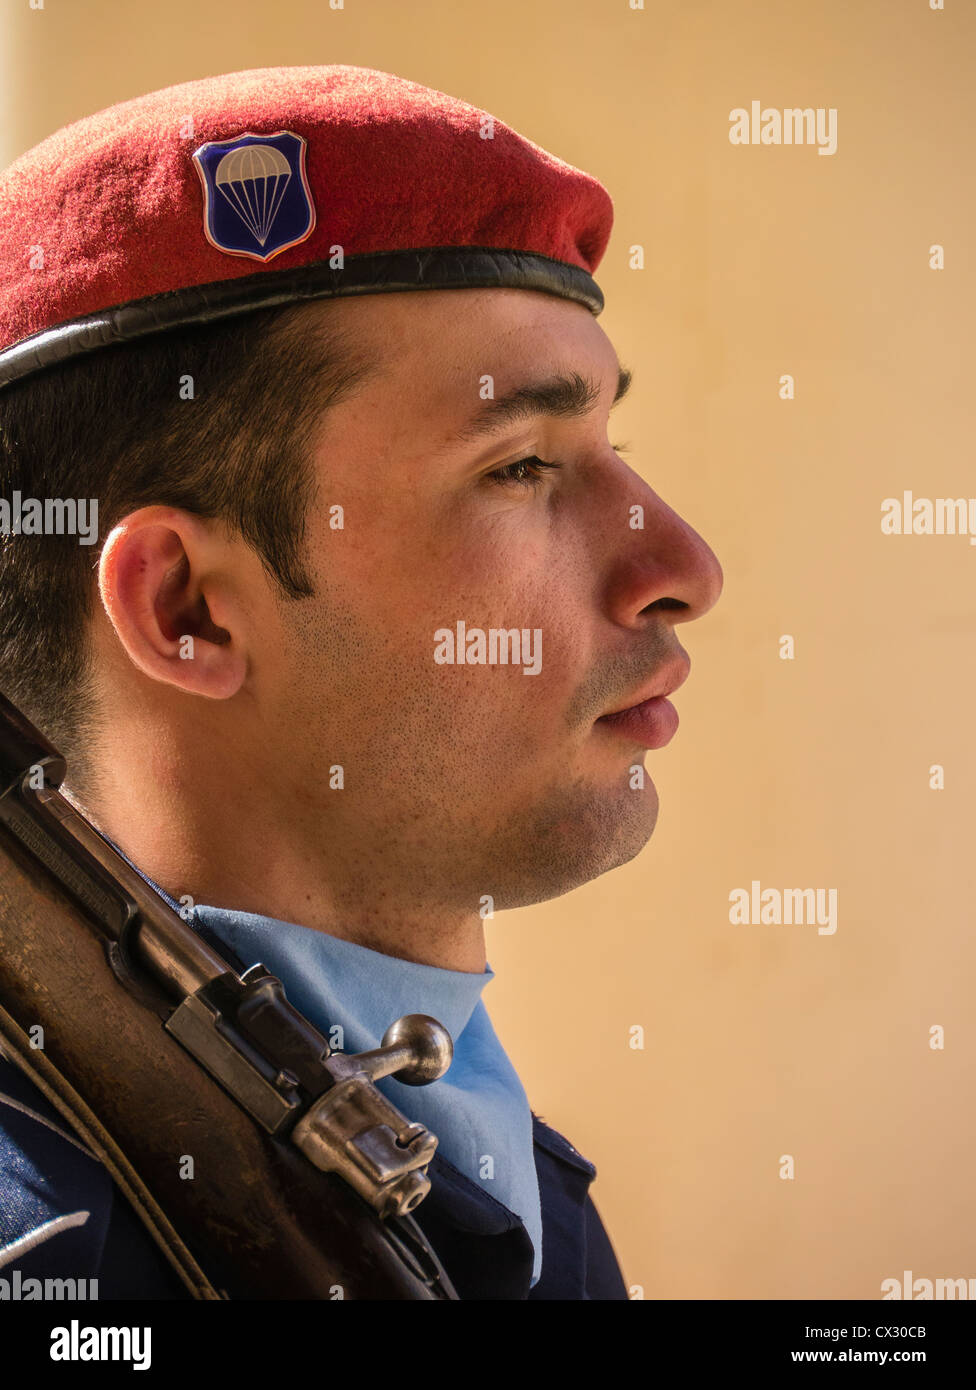 Cerrar vista lateral de la cabeza y los hombros de un soldado de guardia en el Panteón edificio en Asunción, Paraguay. Foto de stock